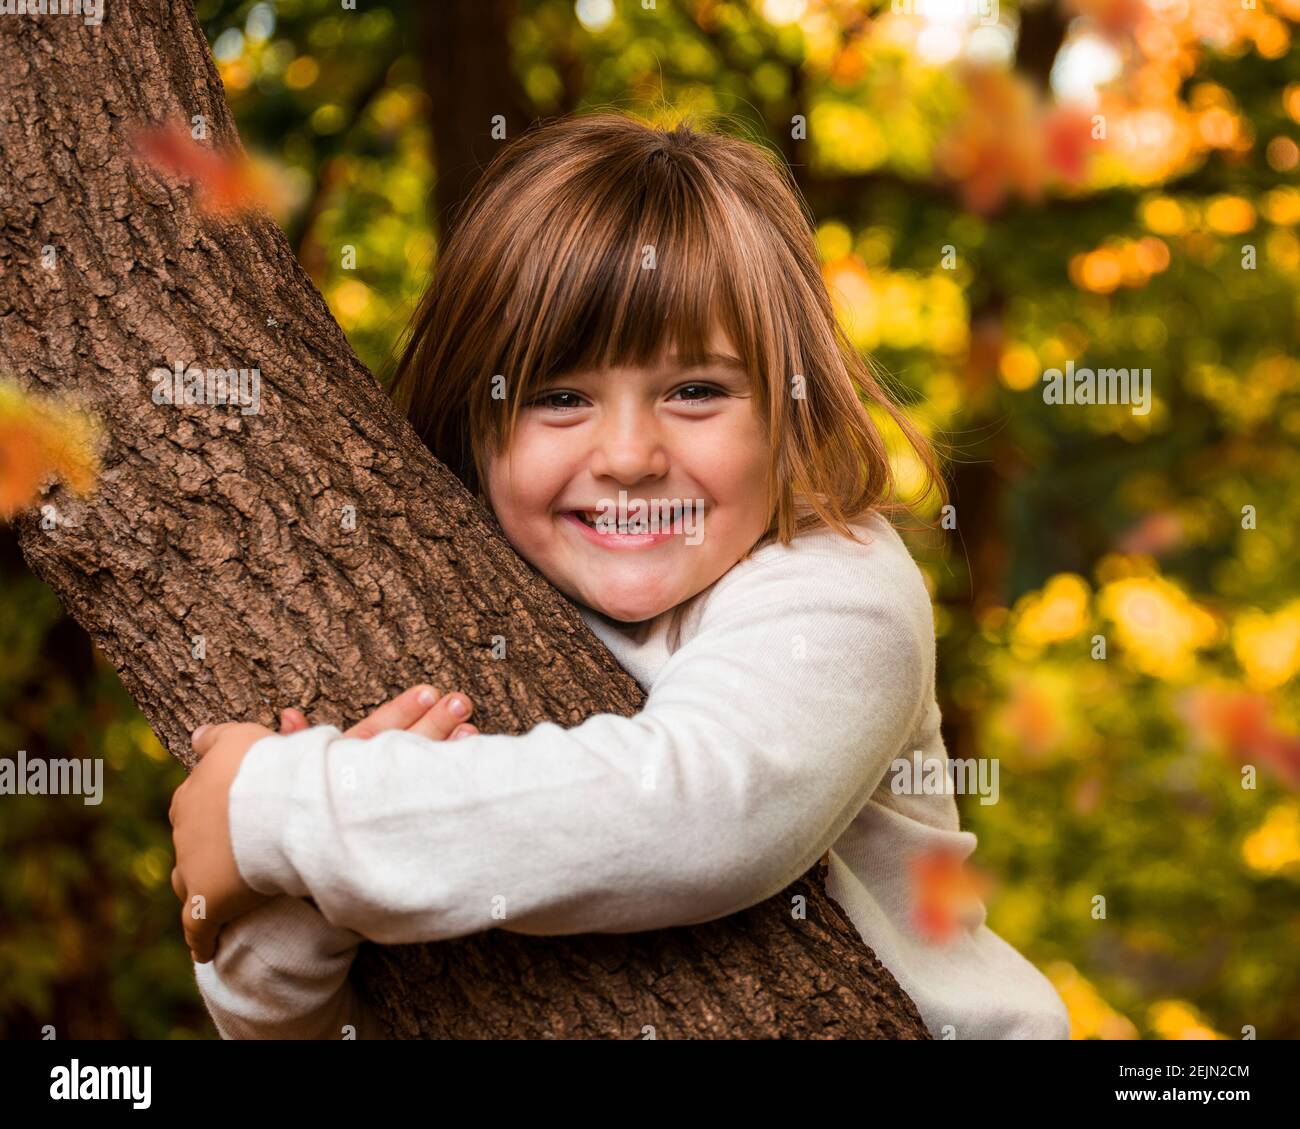 Kleines glückliches Mädchen umarmt einen Baum mit goldenem Herbstlaub Im Hintergrund in einem Wald Naturpark auf einem Sonniger Spätsommertag Stockfoto